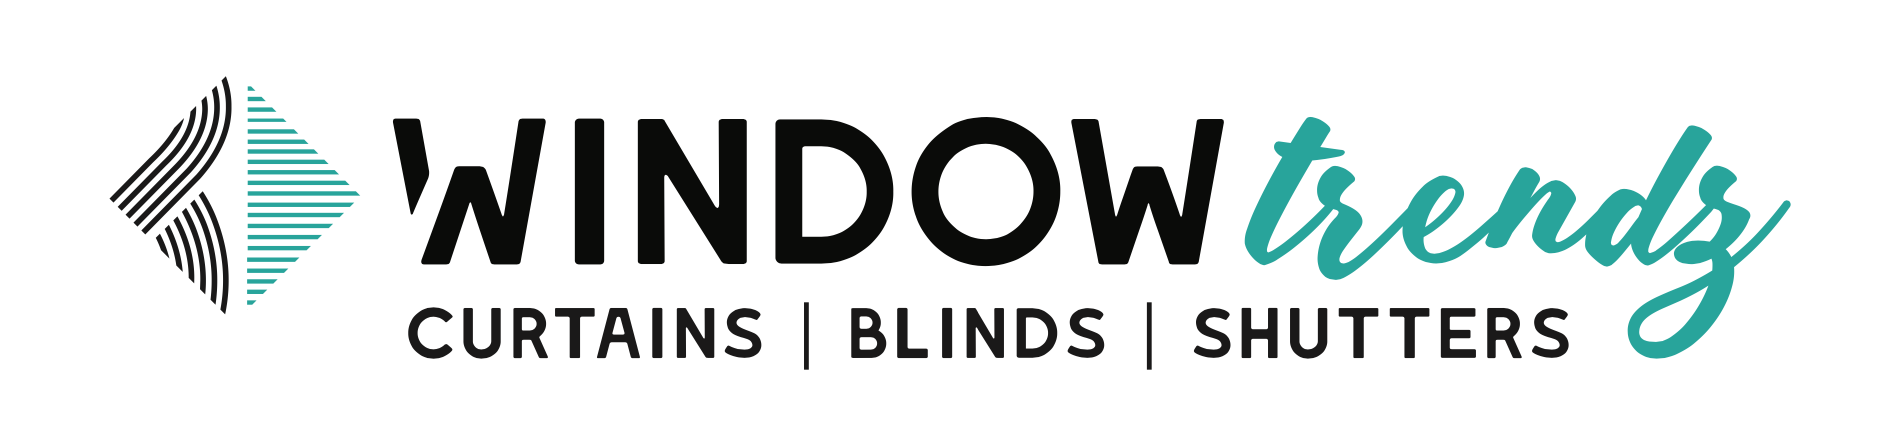 Window Trendz Logo